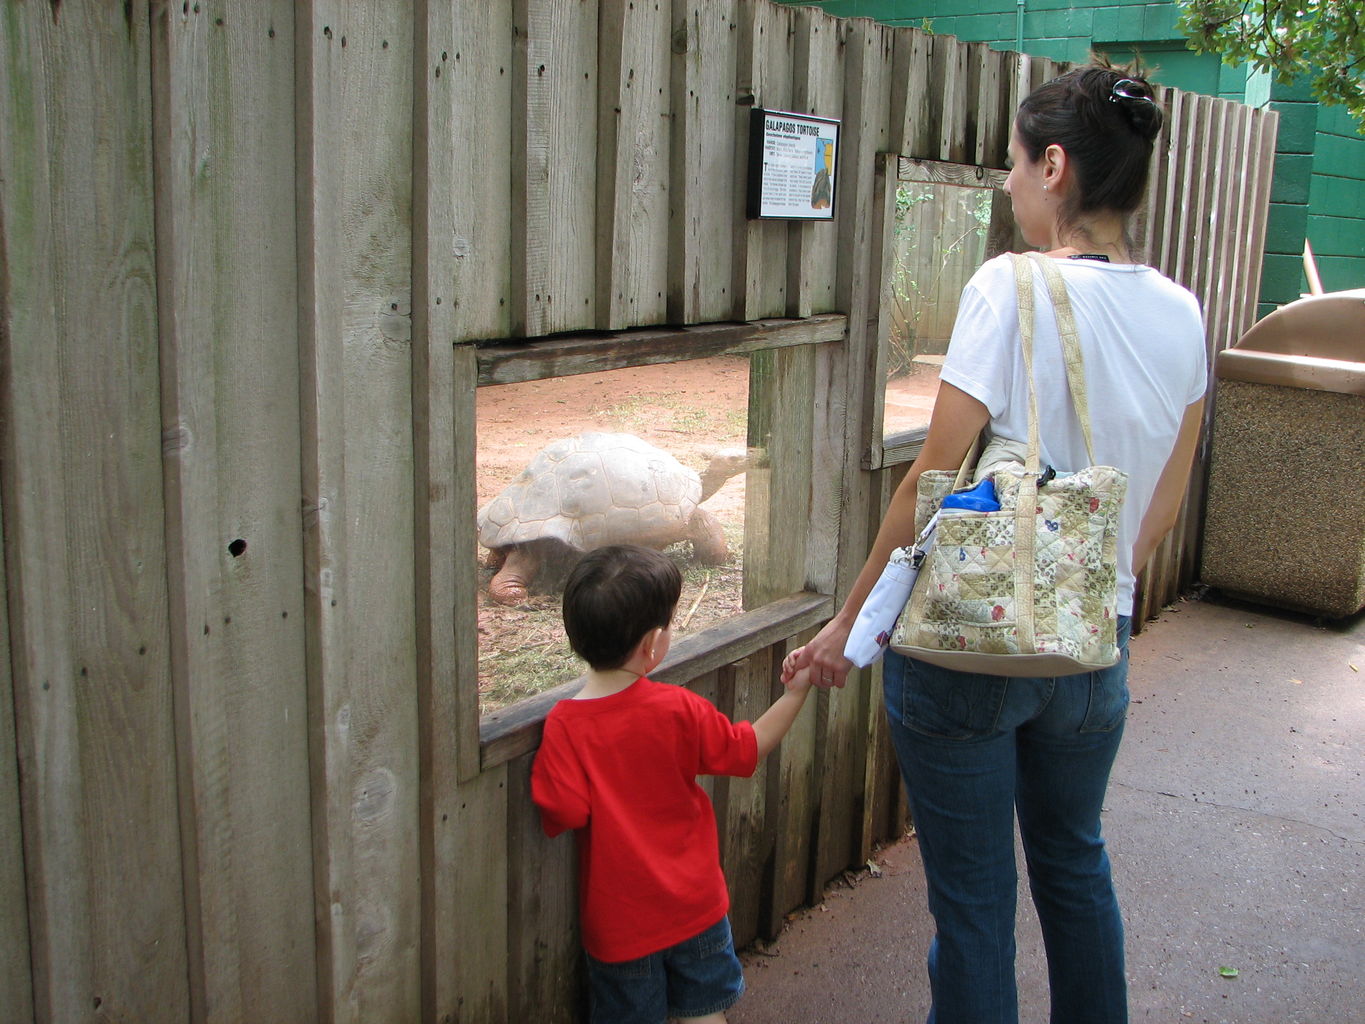 Oklahoma City Zoo
